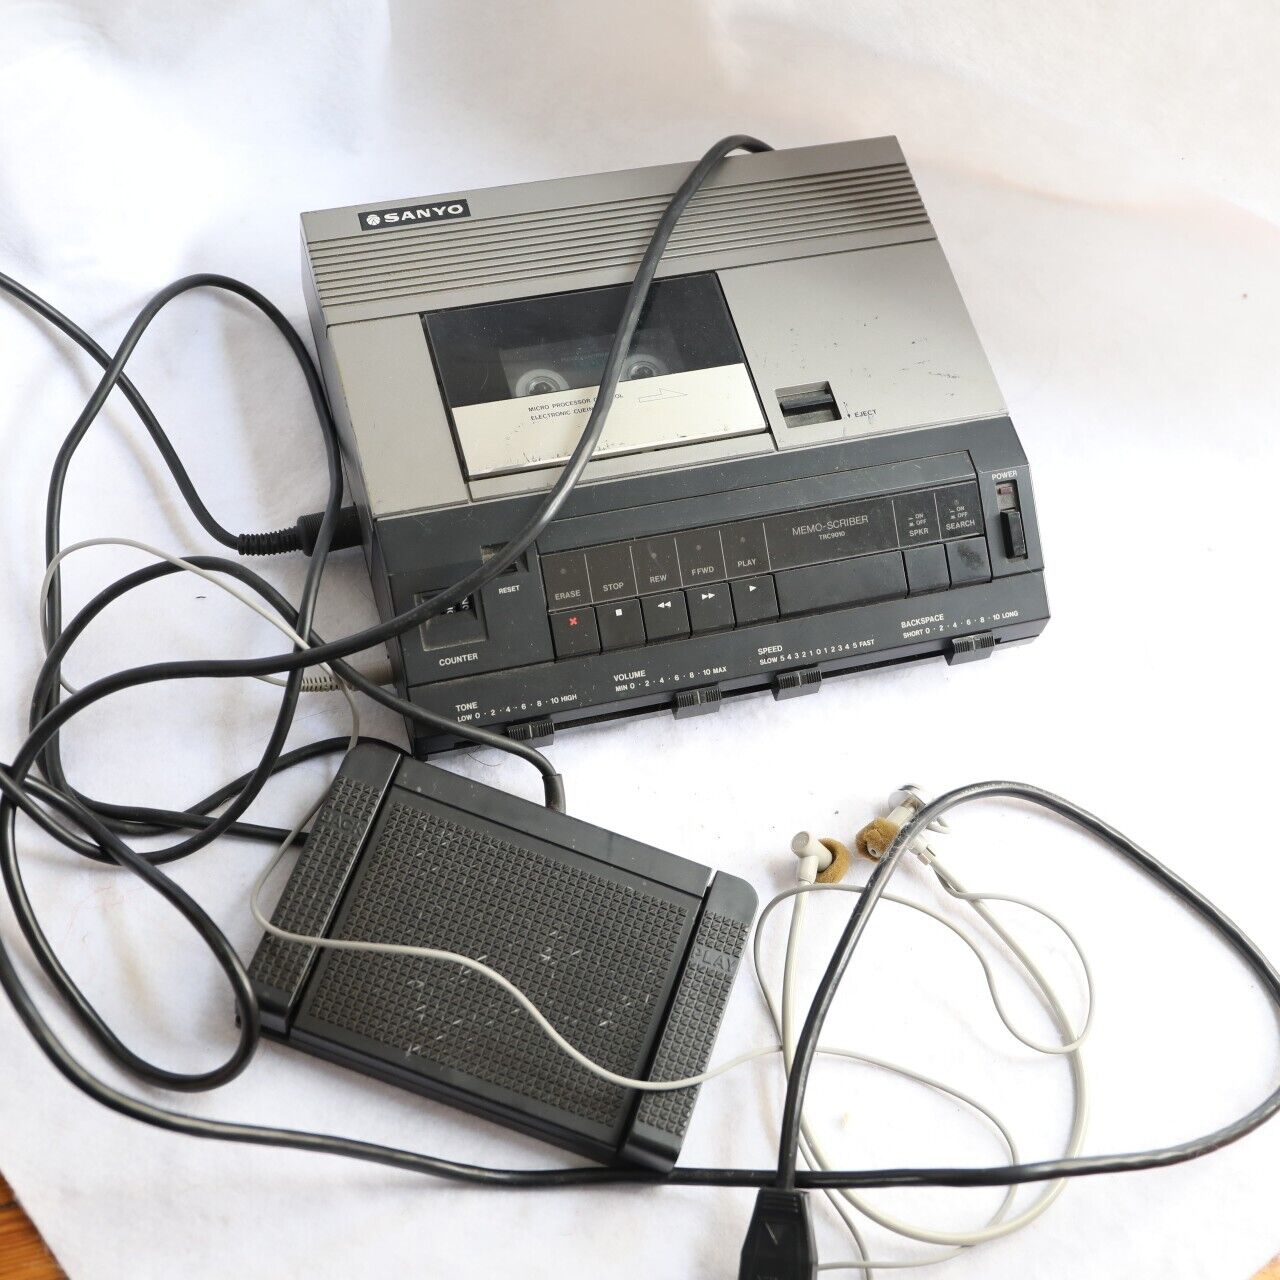 Sanyo Memo Scriber TRC-9010 set  Vintage Electronics Tested/works